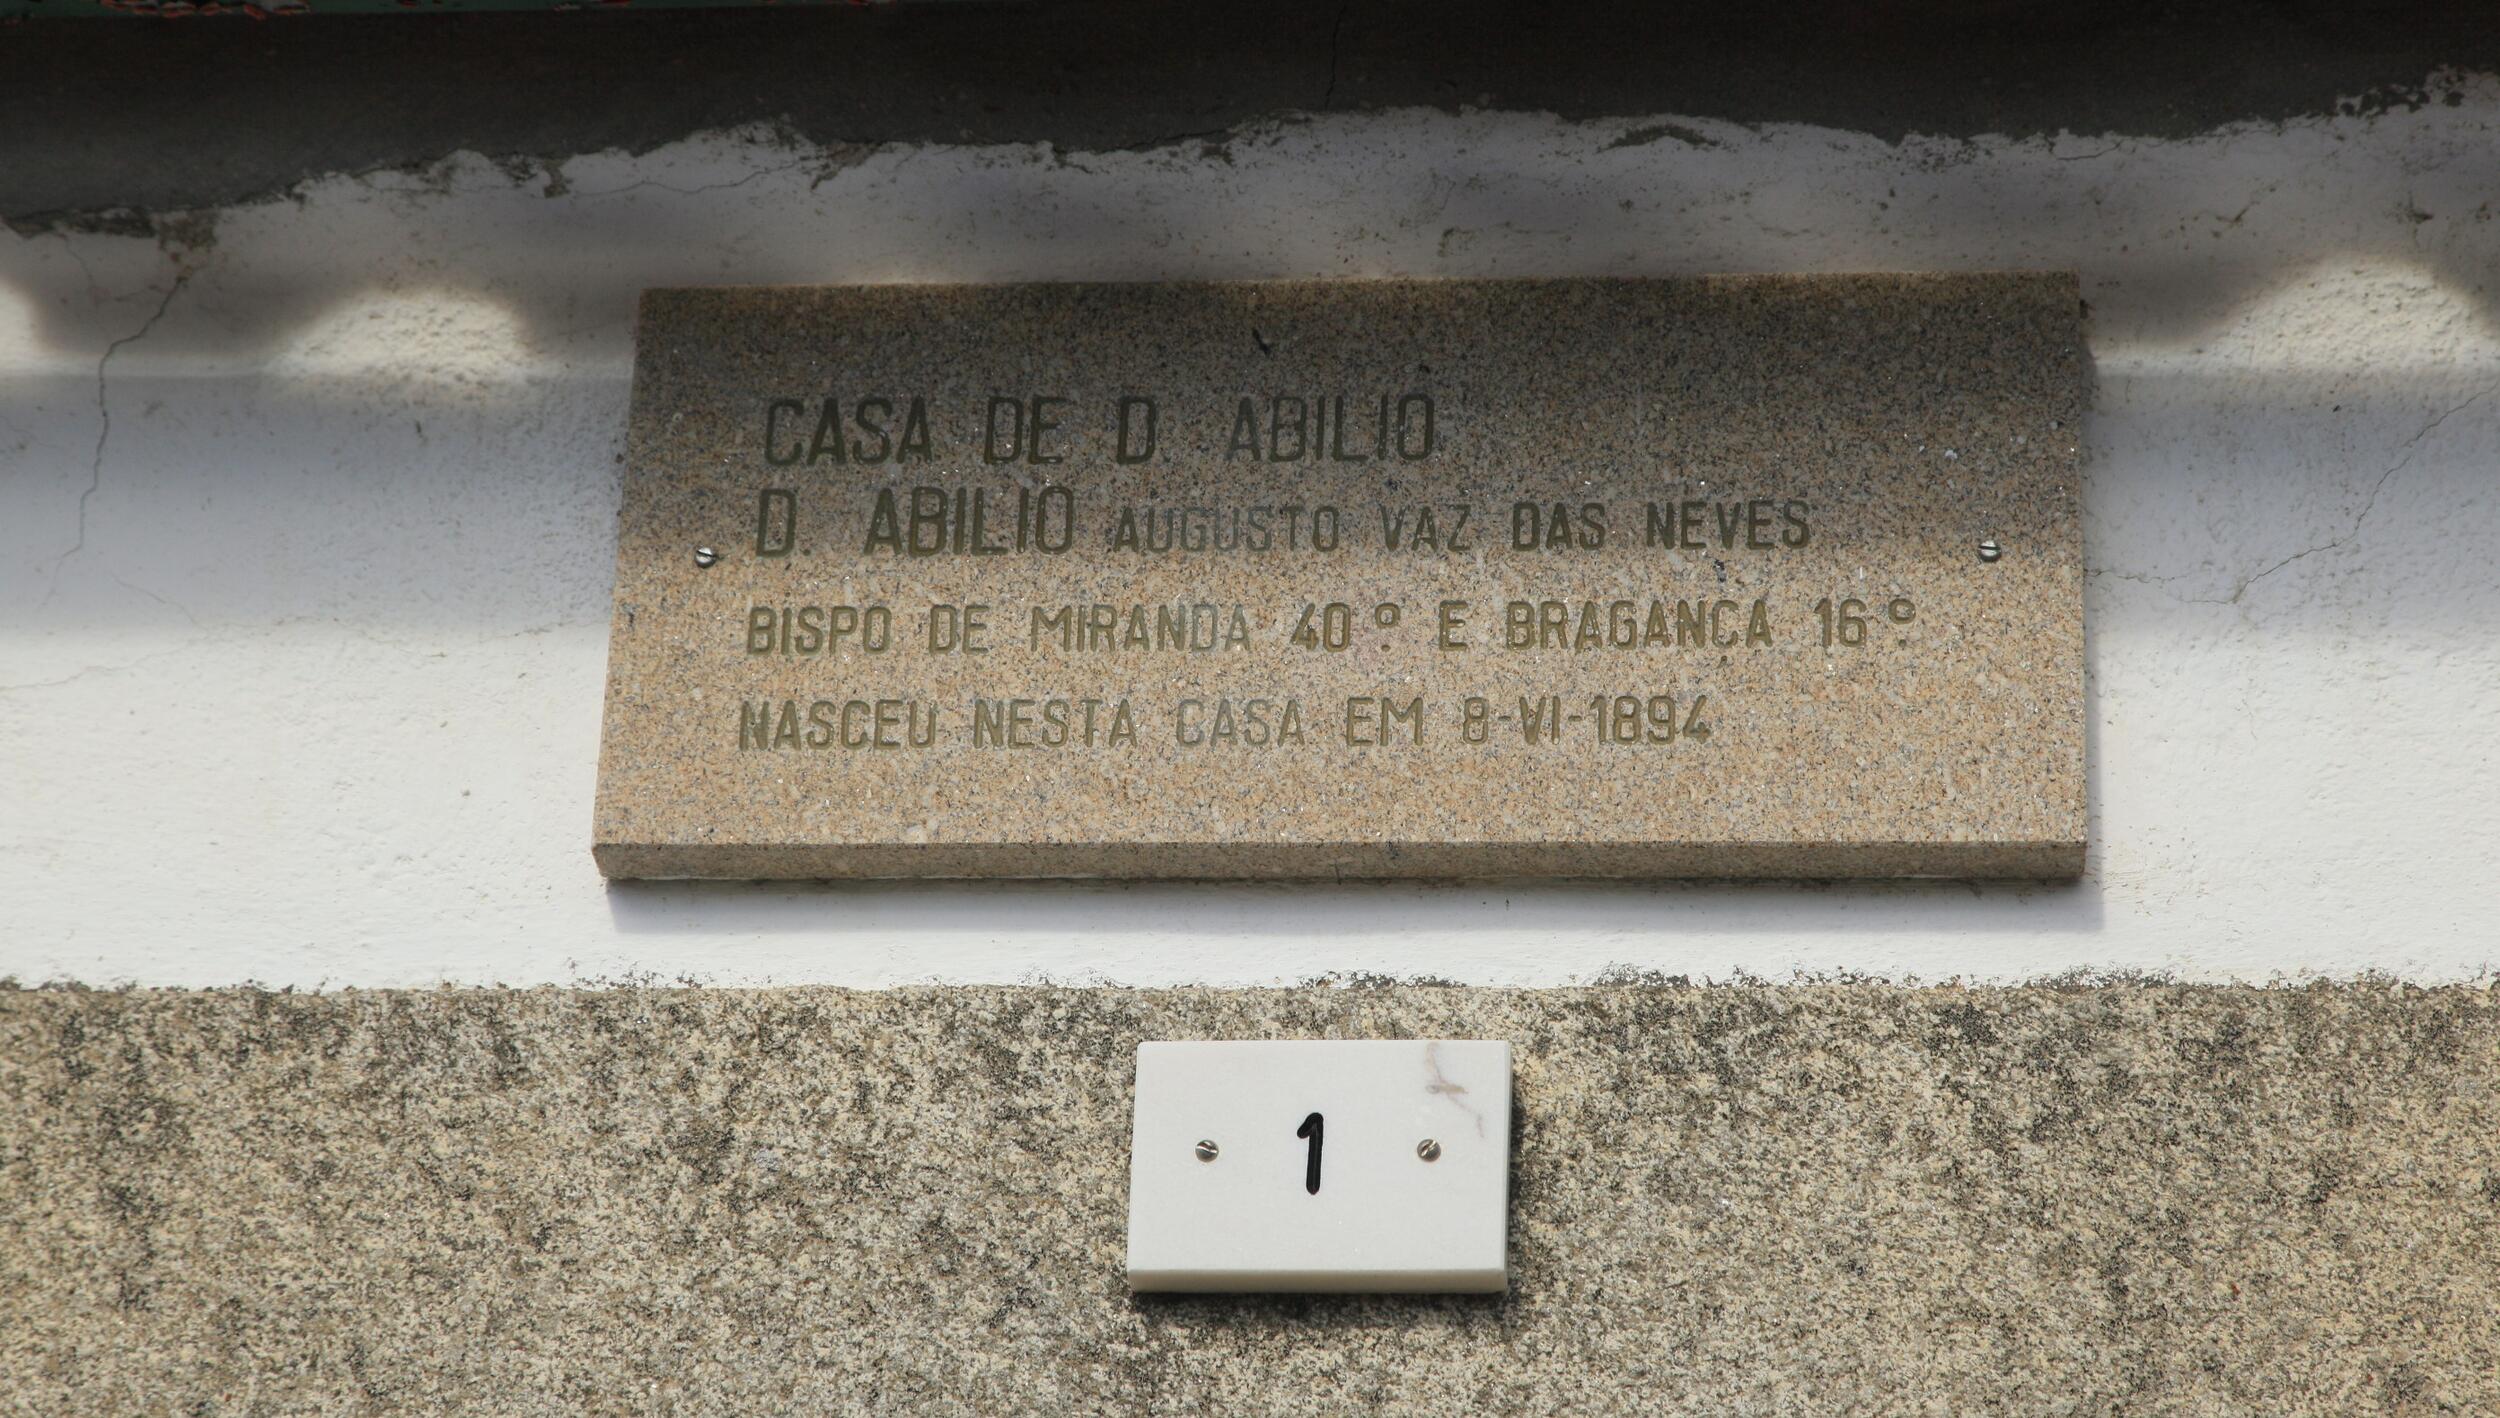 Placa alusiva ao nascimento de D. Abilio Neves